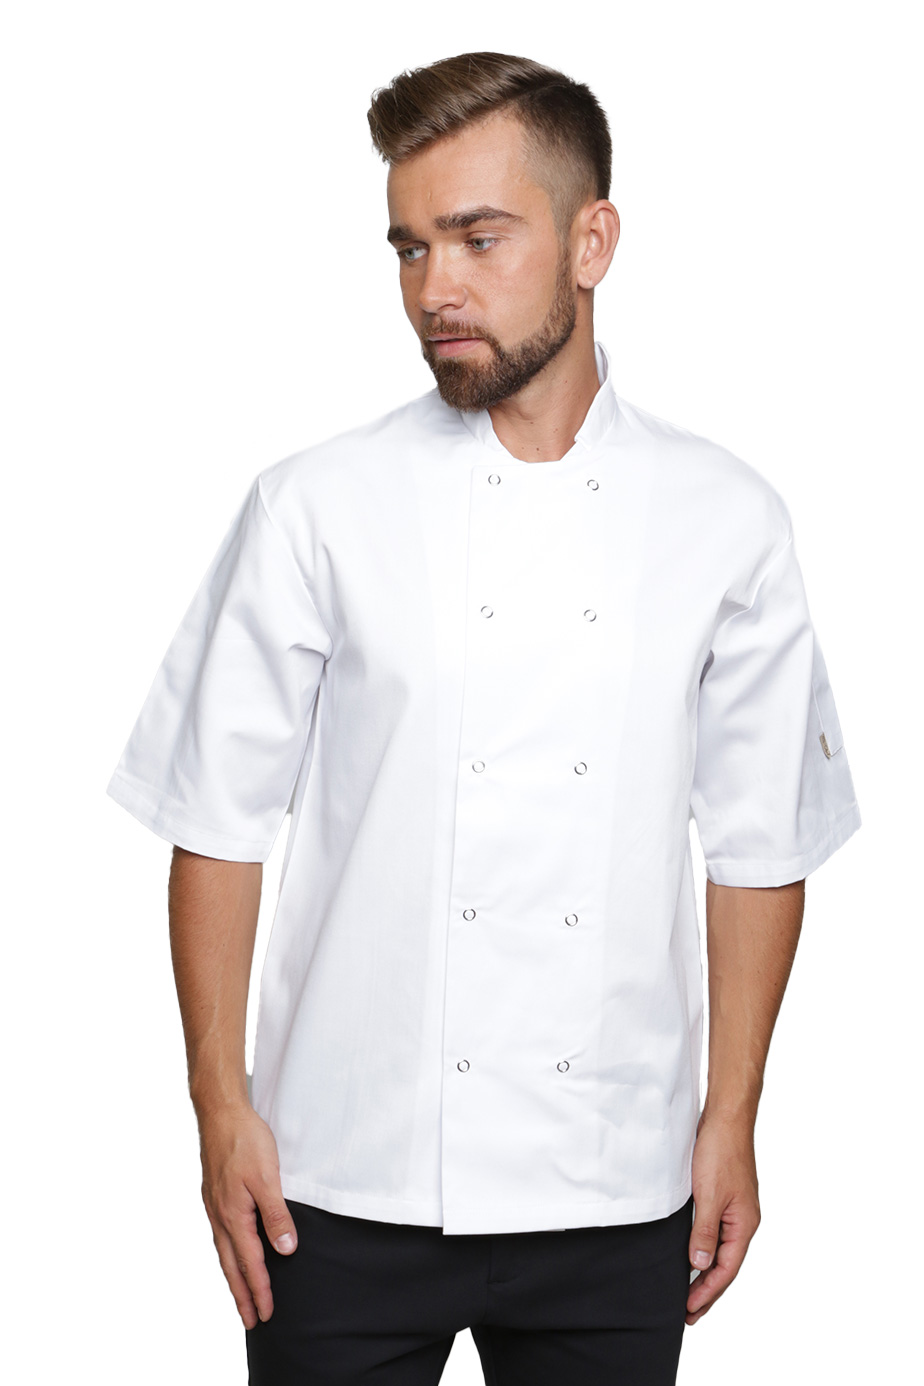 Wasabi Short Sleeve Chef’s Jacket